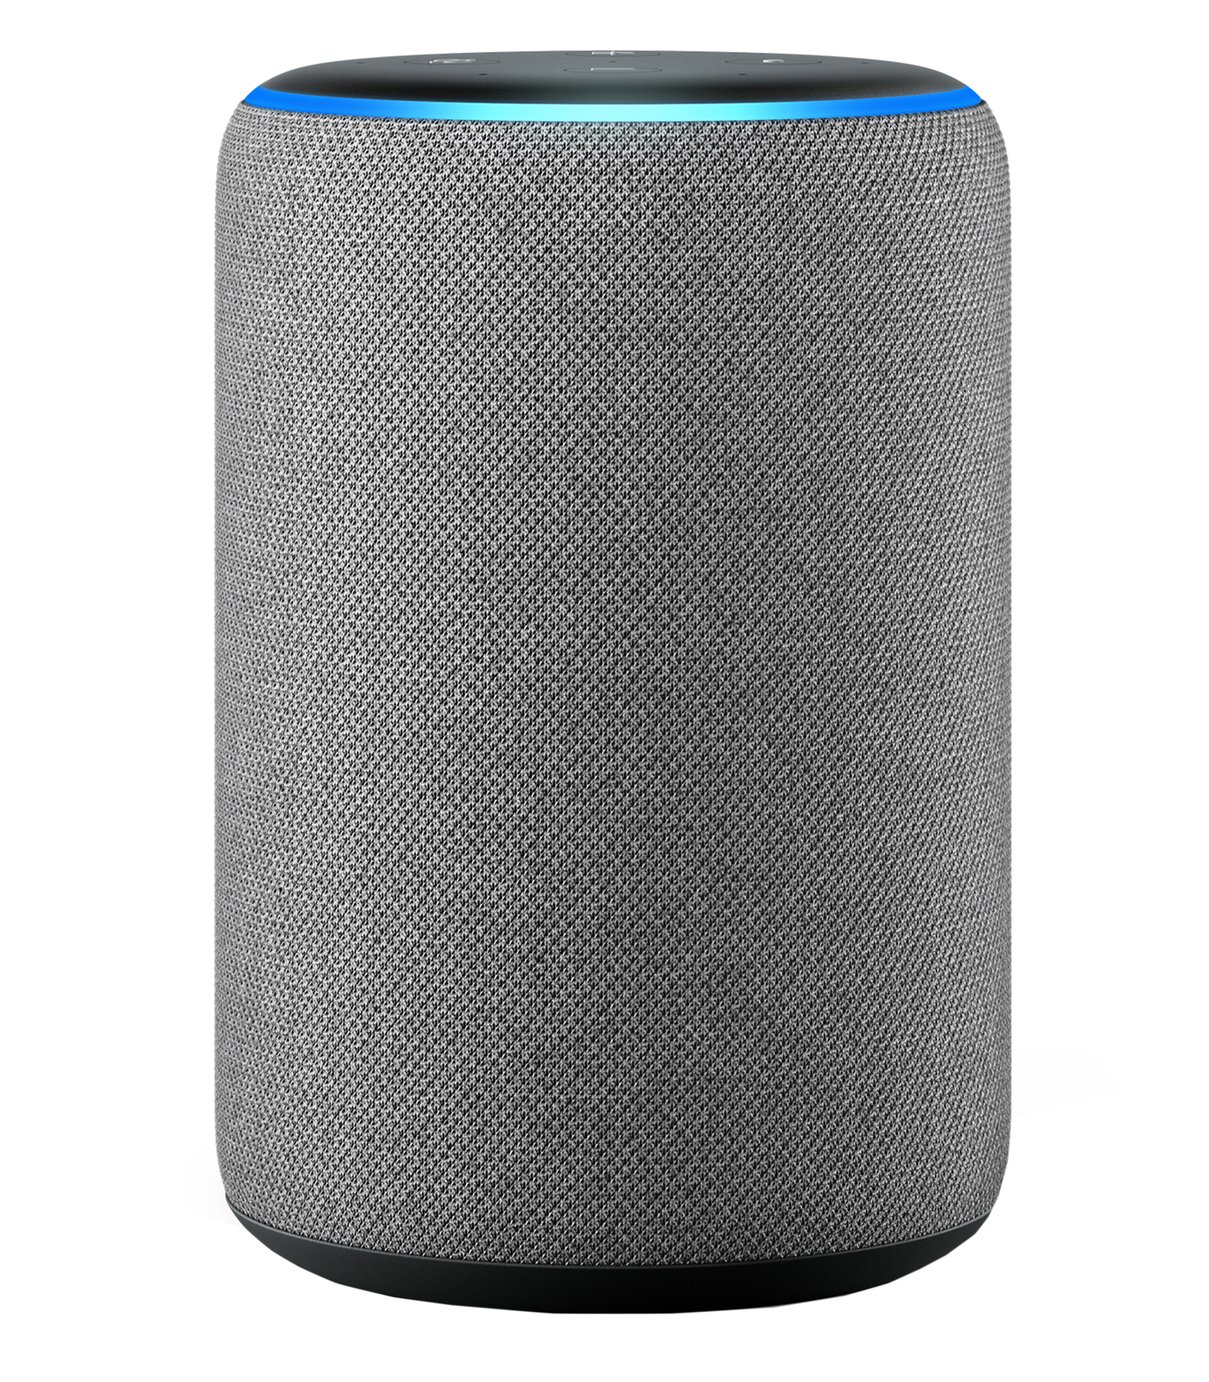 Amazon Echo Smart Speaker with Alexa Review